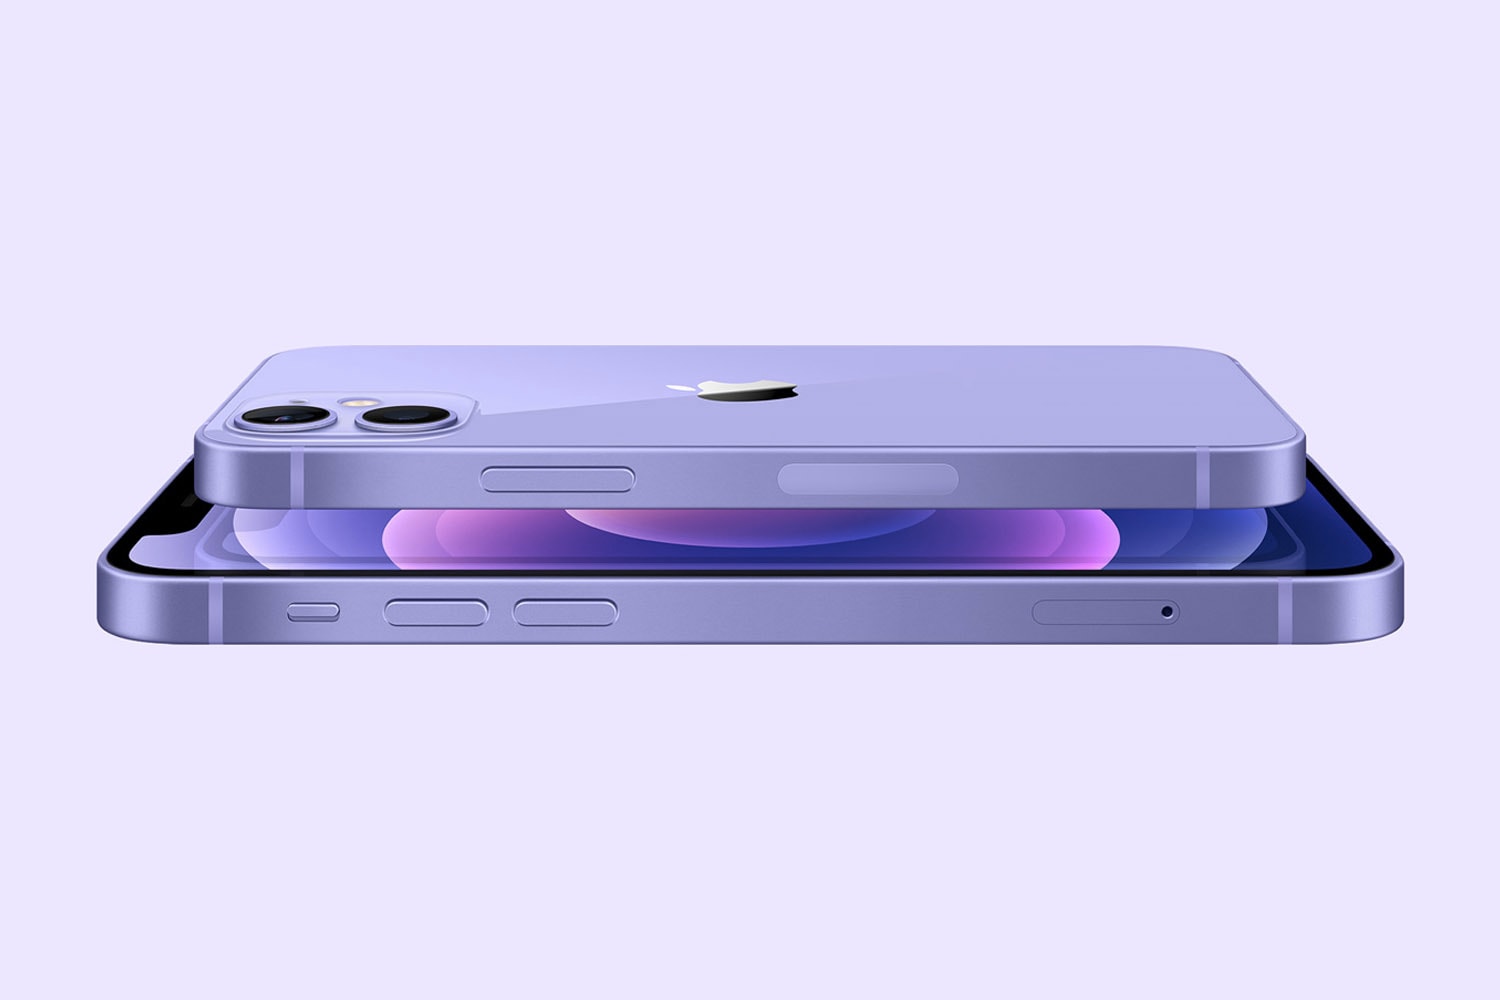 Apple 發佈會 − Apple 正式為 iPhone 12 與 iPhone 12 mini 推出全新「紫色」機型